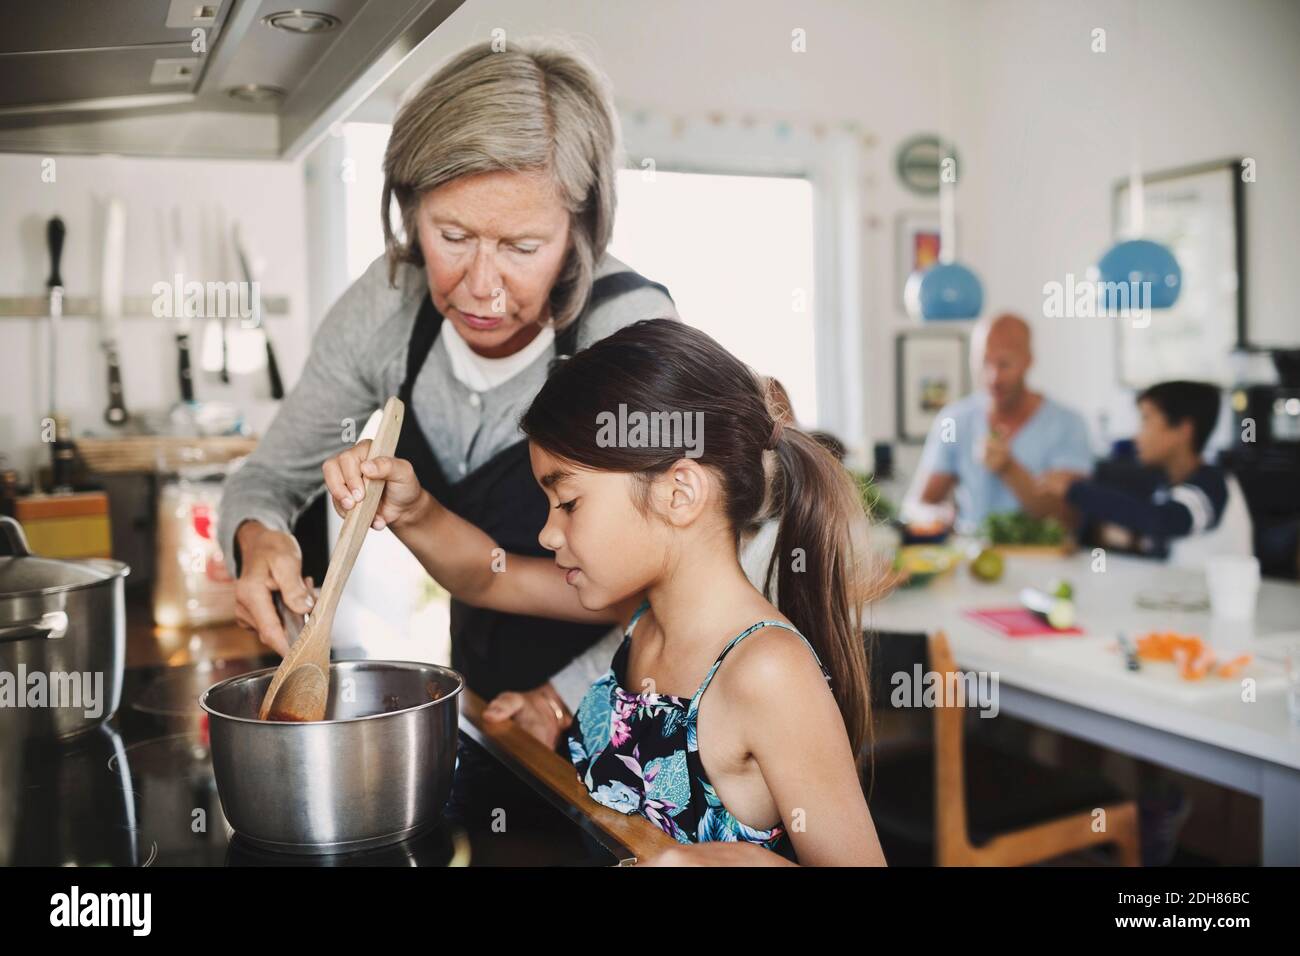 Abuela mirando a la chica cocinando en el mostrador de la cocina Foto de stock